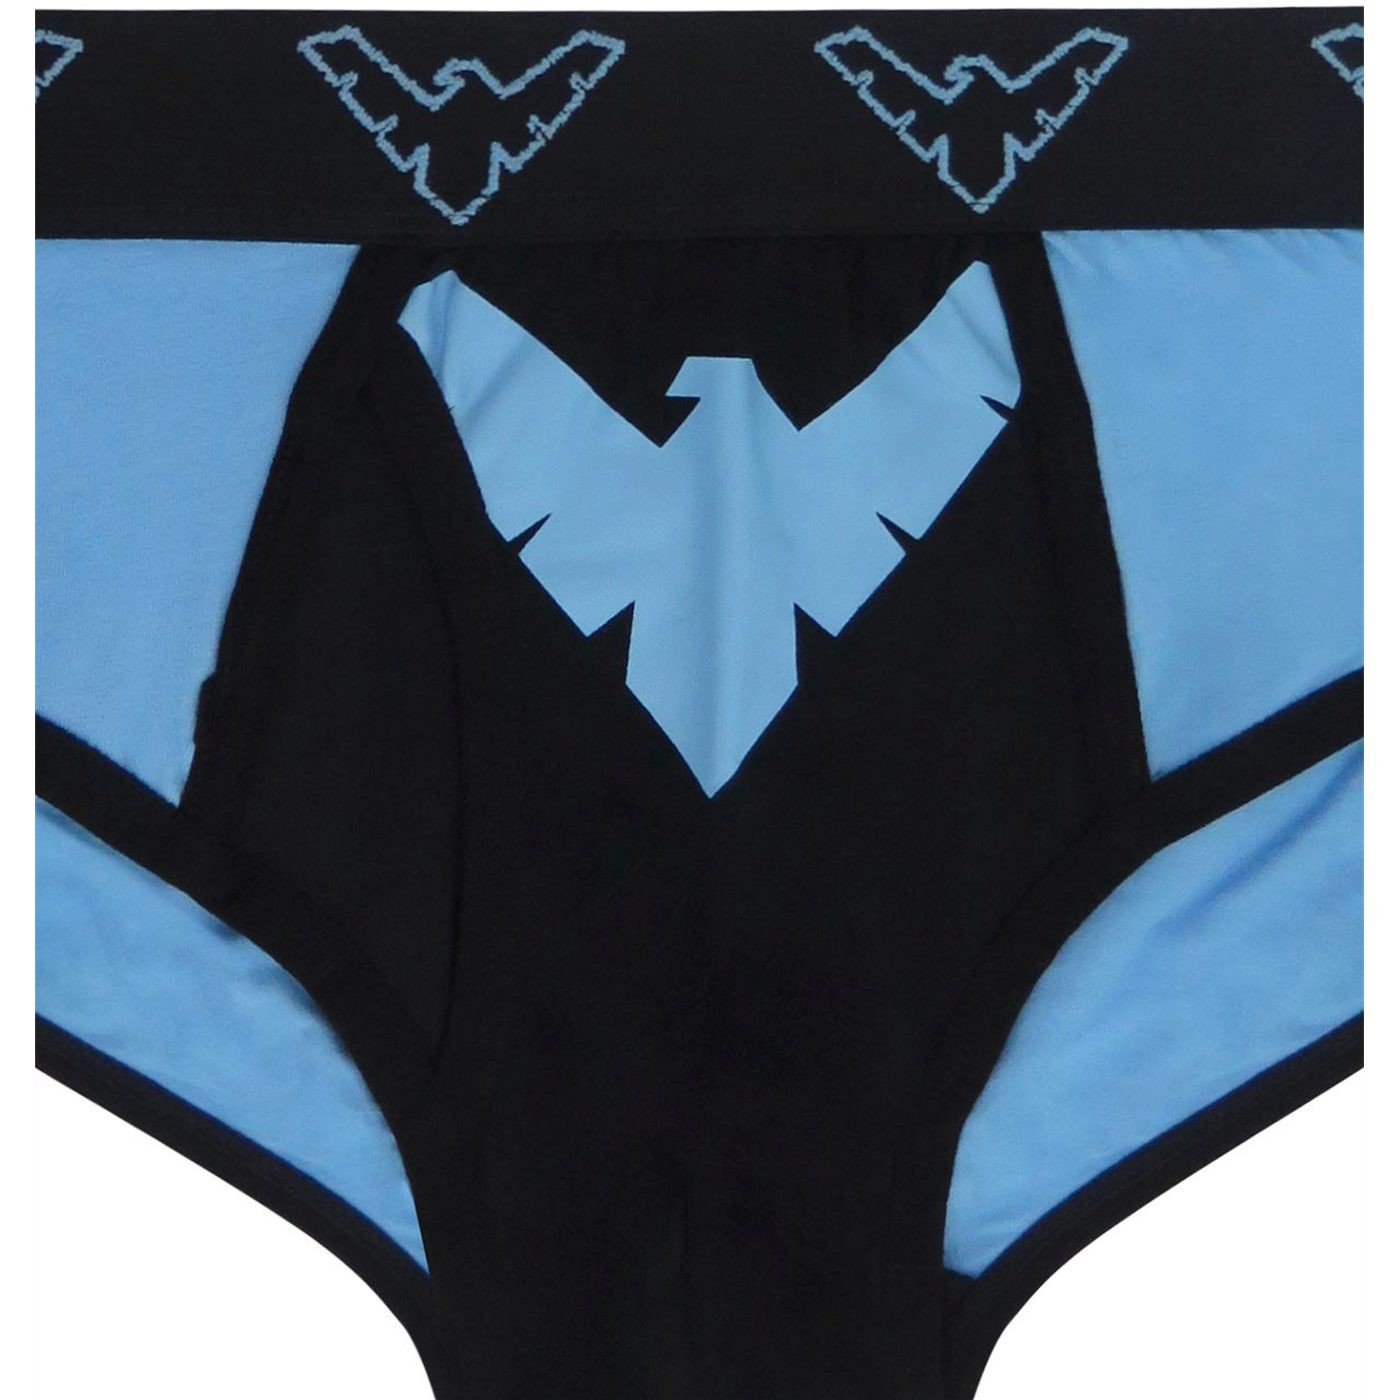 Nightwing Symbol Men's Underwear Fashion Briefs